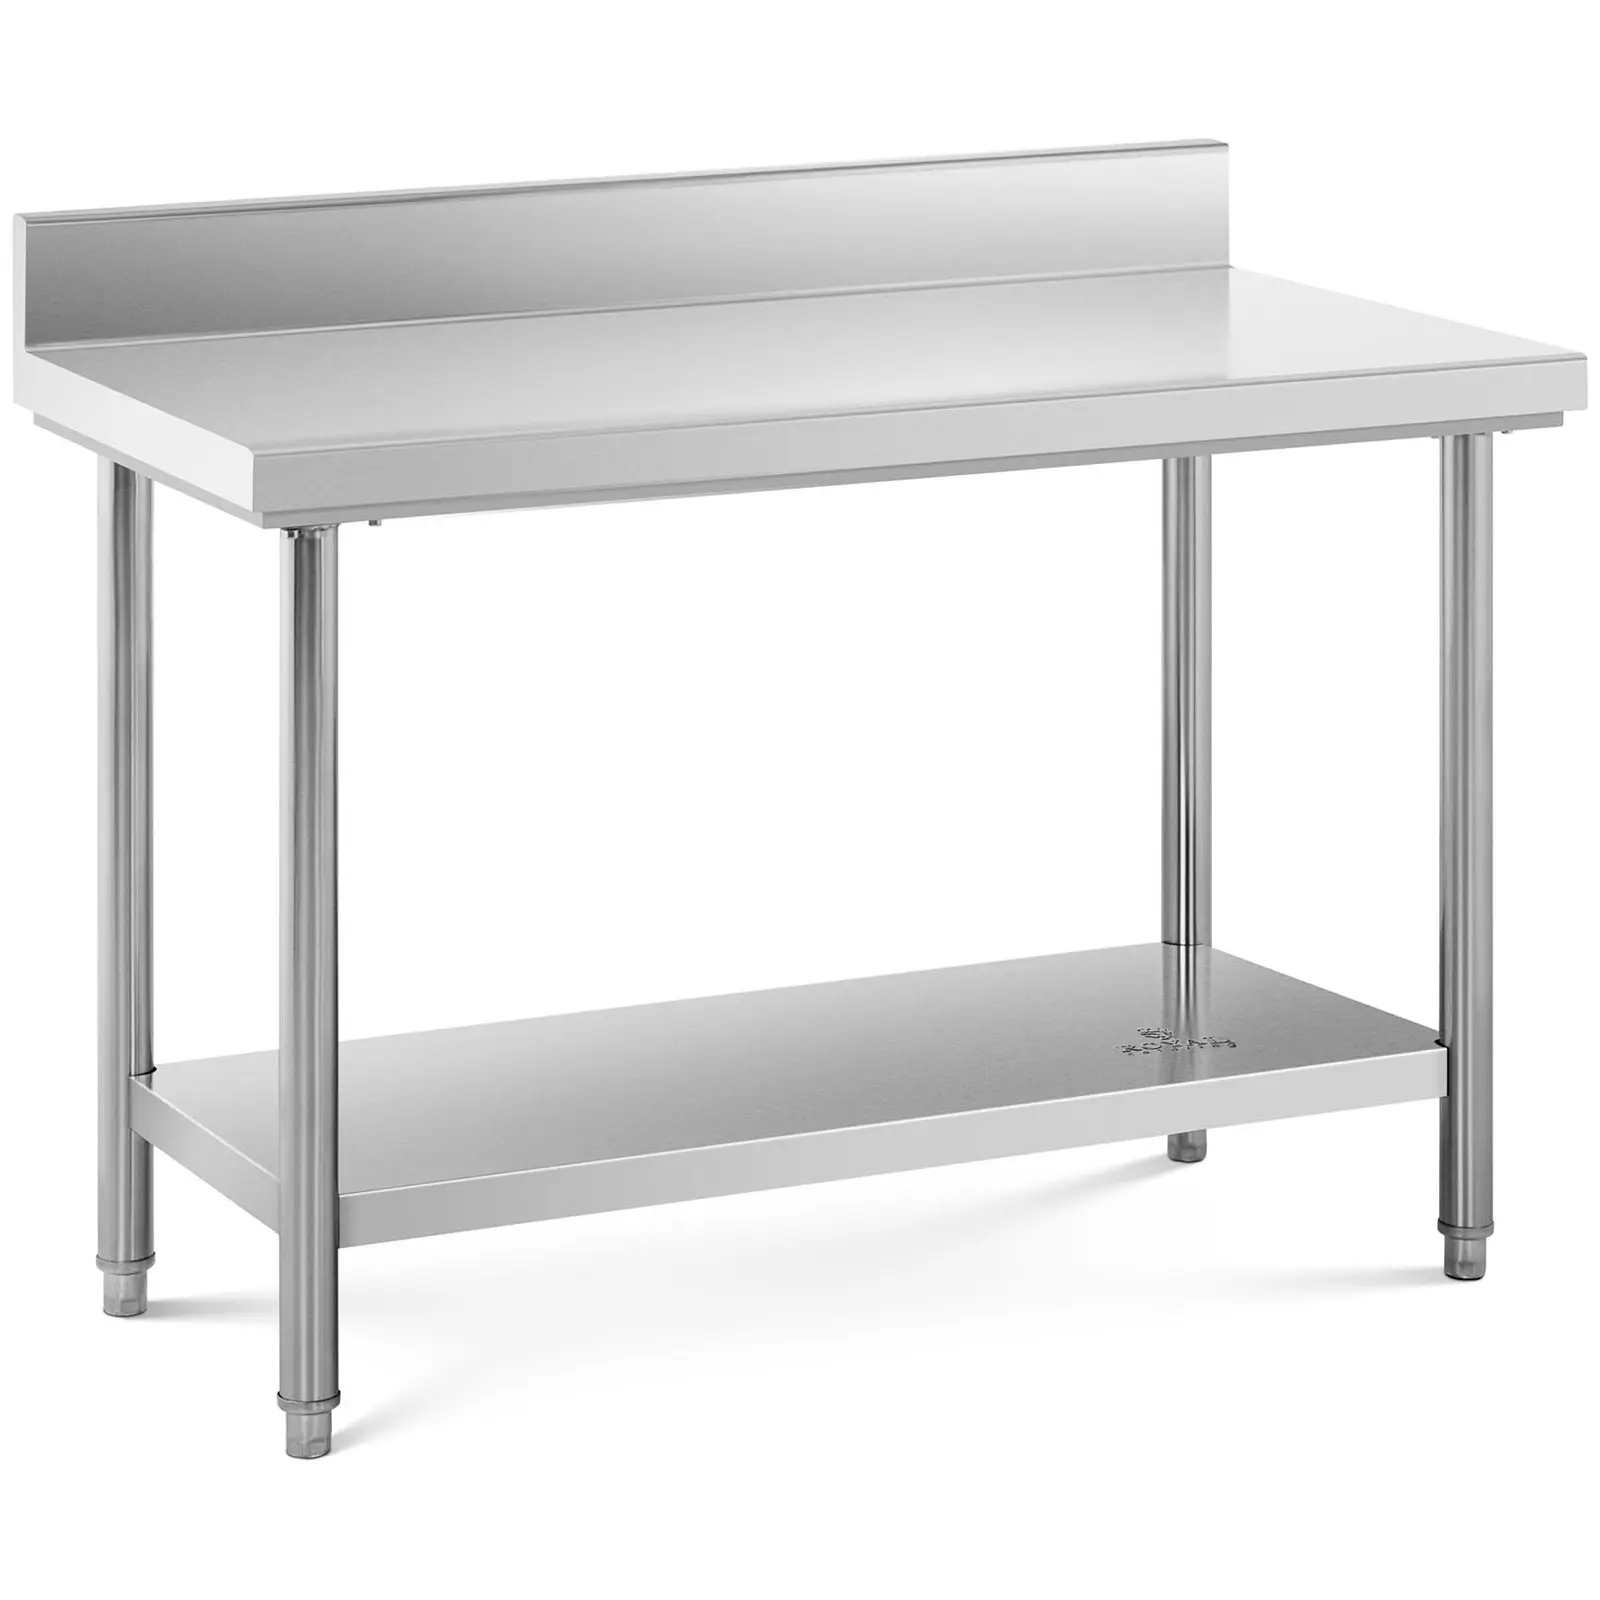 Nerūdijančio plieno darbo stalas - 120 x 60 cm - bortelis - 137 kg keliamoji galia